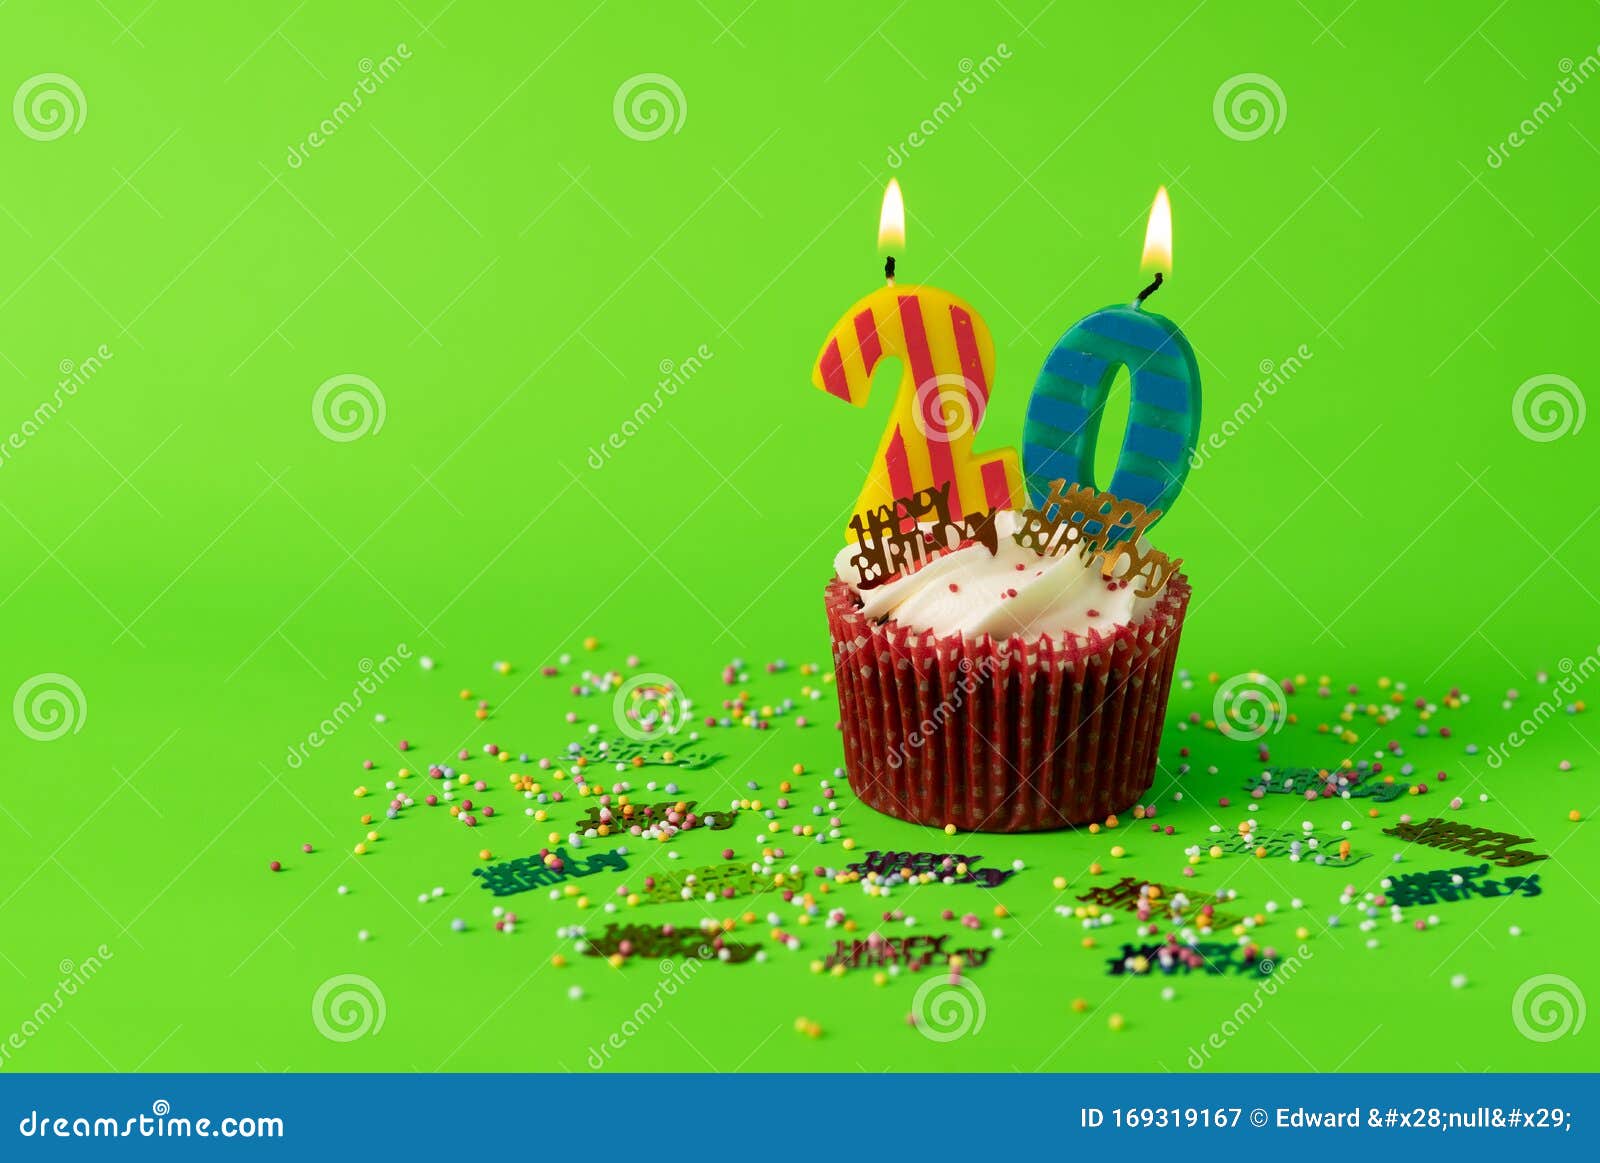 Birthday Cupcake: Một chiếc Cupcake đầy màu sắc và tràn đầy hương thơm ngọt ngào sẽ khiến ngày sinh nhật của bạn trở nên thật đặc biệt và ý nghĩa. Cùng xem qua hình ảnh để chinh phục trái tim người được tặng món quà này nhé!